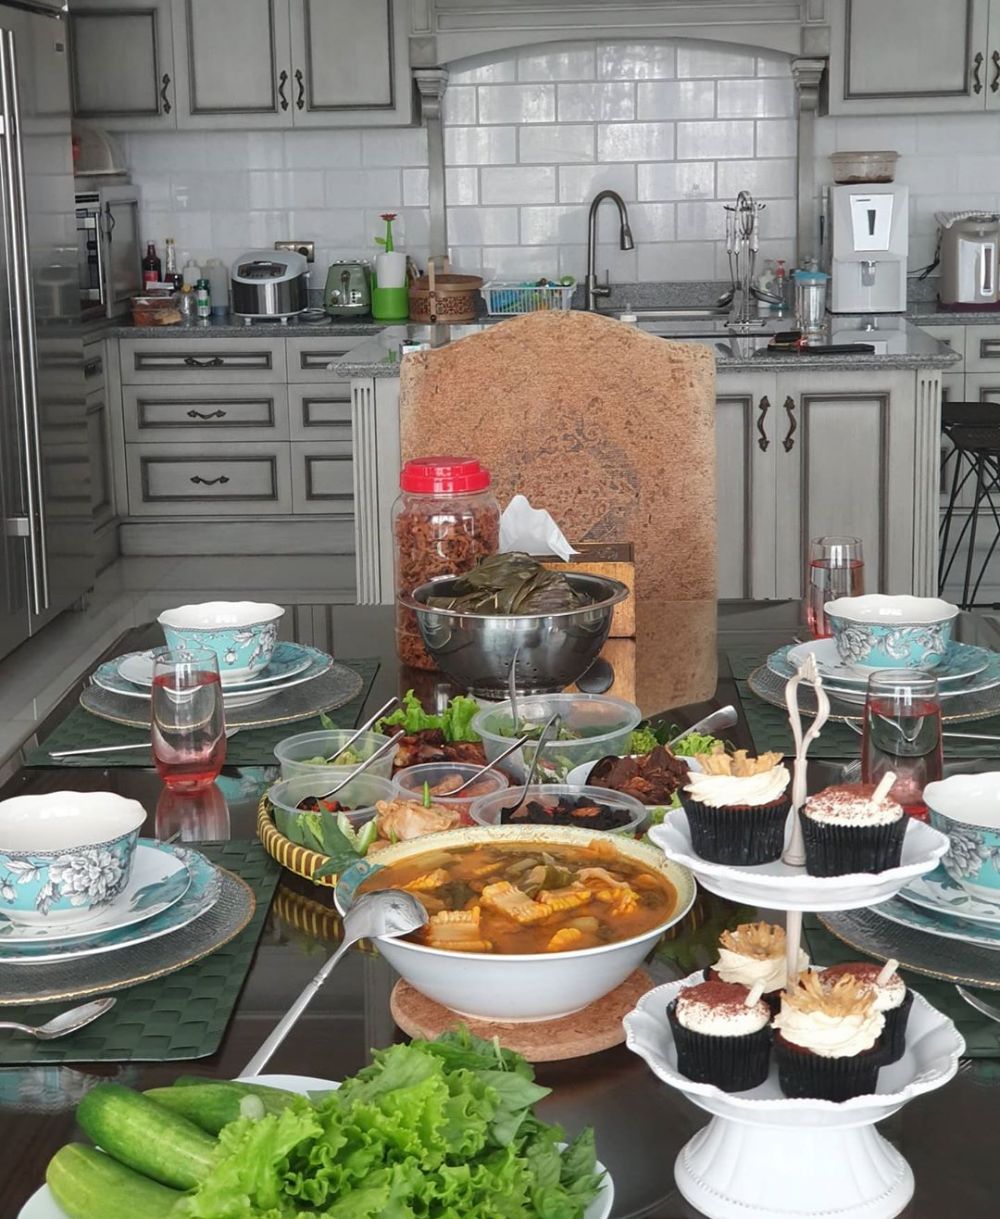 Unggah menu masakan, Mayangsari bagikan resep disayang suami